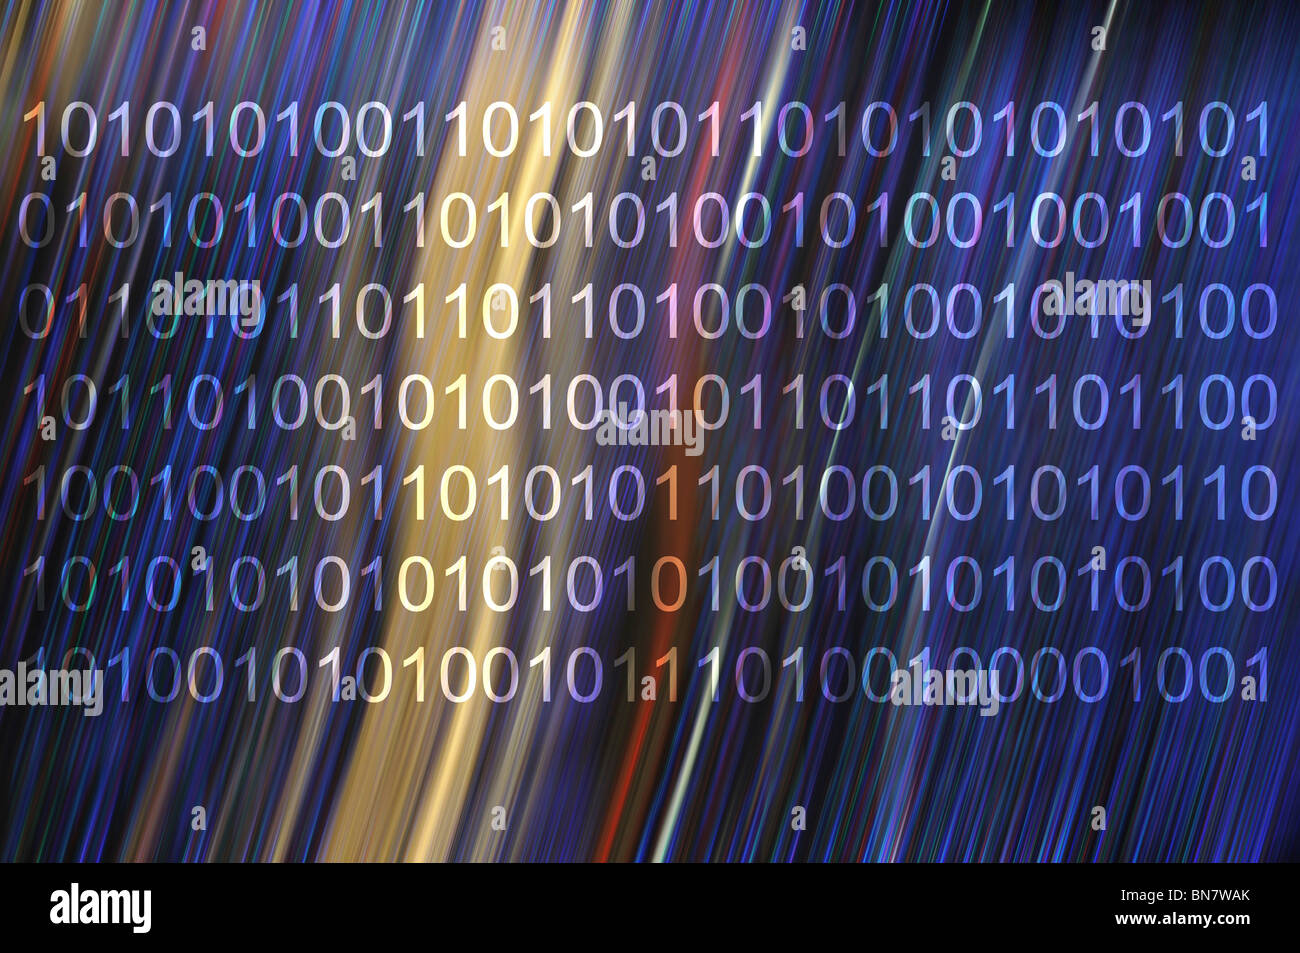 Zusammenfassung Hintergrund der binären Computersprache Stockfoto